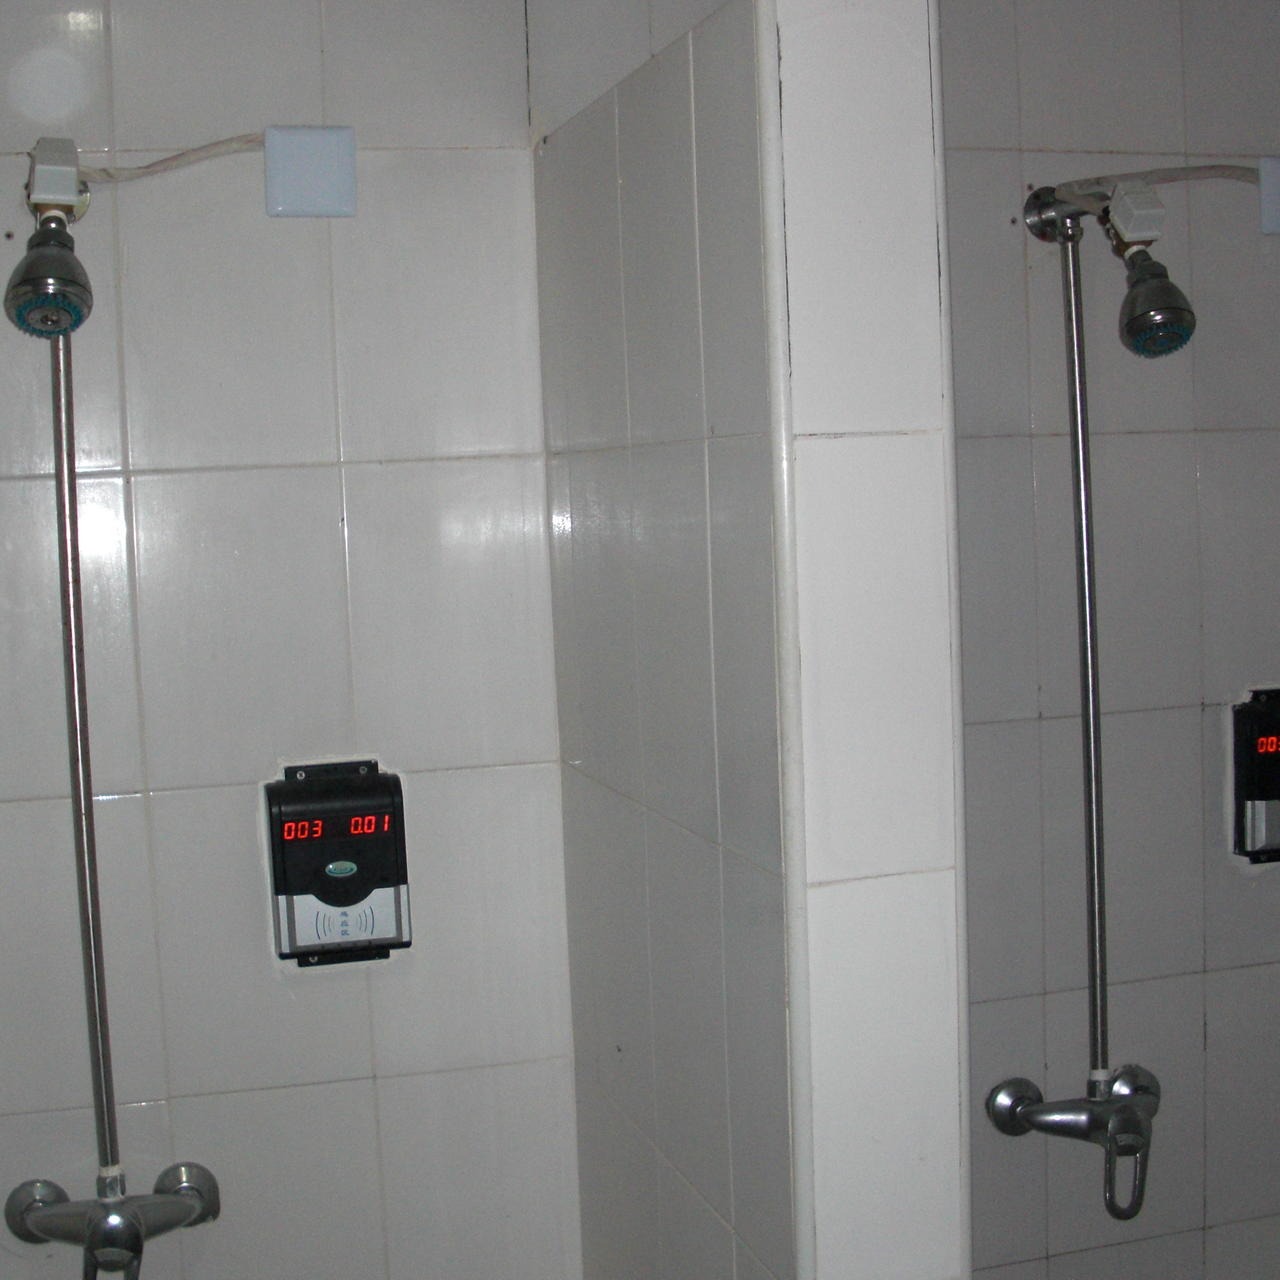 兴天下HF-660浴室水控机,浴室水控系统,淋浴刷卡节水系统